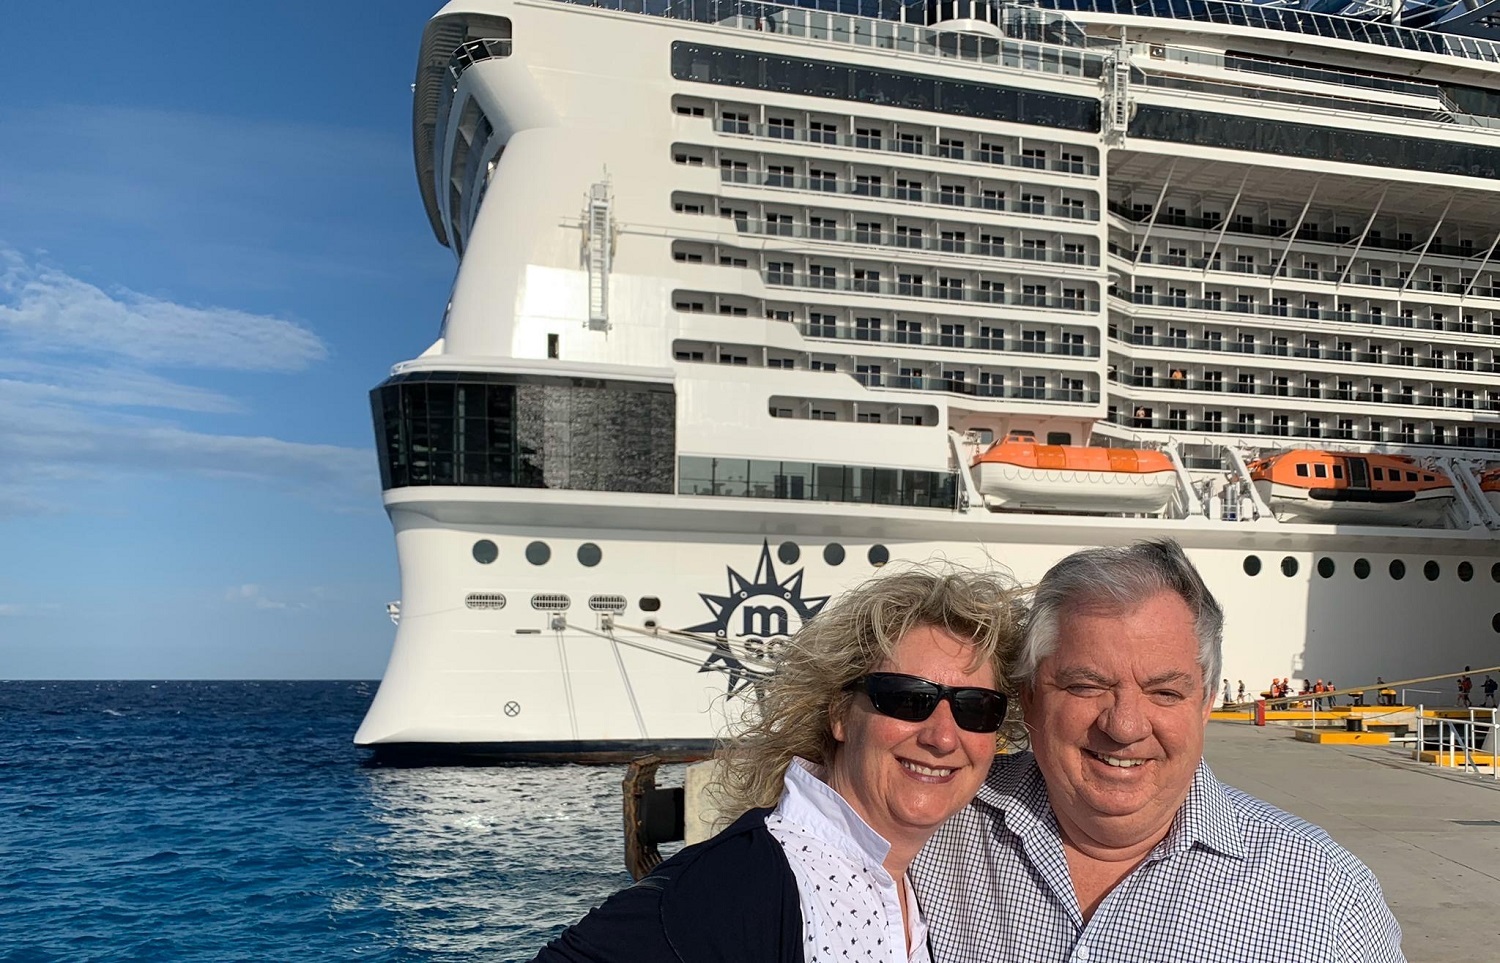 Enfin à terre! Embarqués pour une croisière dans les Caraïbes, Sylvie Meyer-Delaloye et son mari Jacques Meyer sont restés bloqués sur le paquebot «MSC Meraviglia» de dimanche à vendredi après-midi.